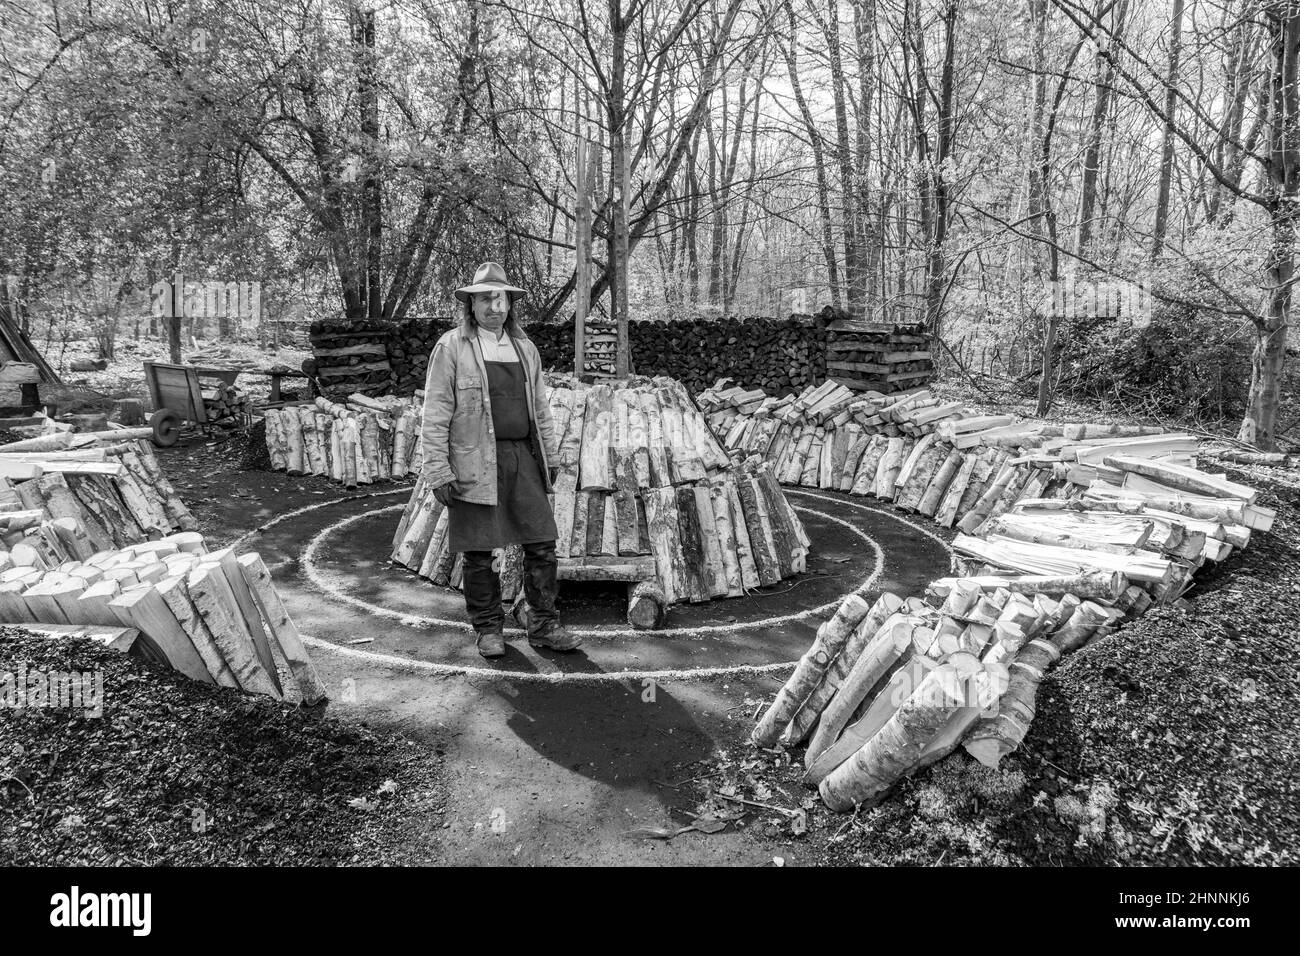 Der Kohlebrenner bereitet das Holz im Hessenpark in Neu Anspach vor. Seit 1974 werden die traditionellen Jobs im Freilichtmuseum Hessenpark dem Publikum gezeigt Stockfoto